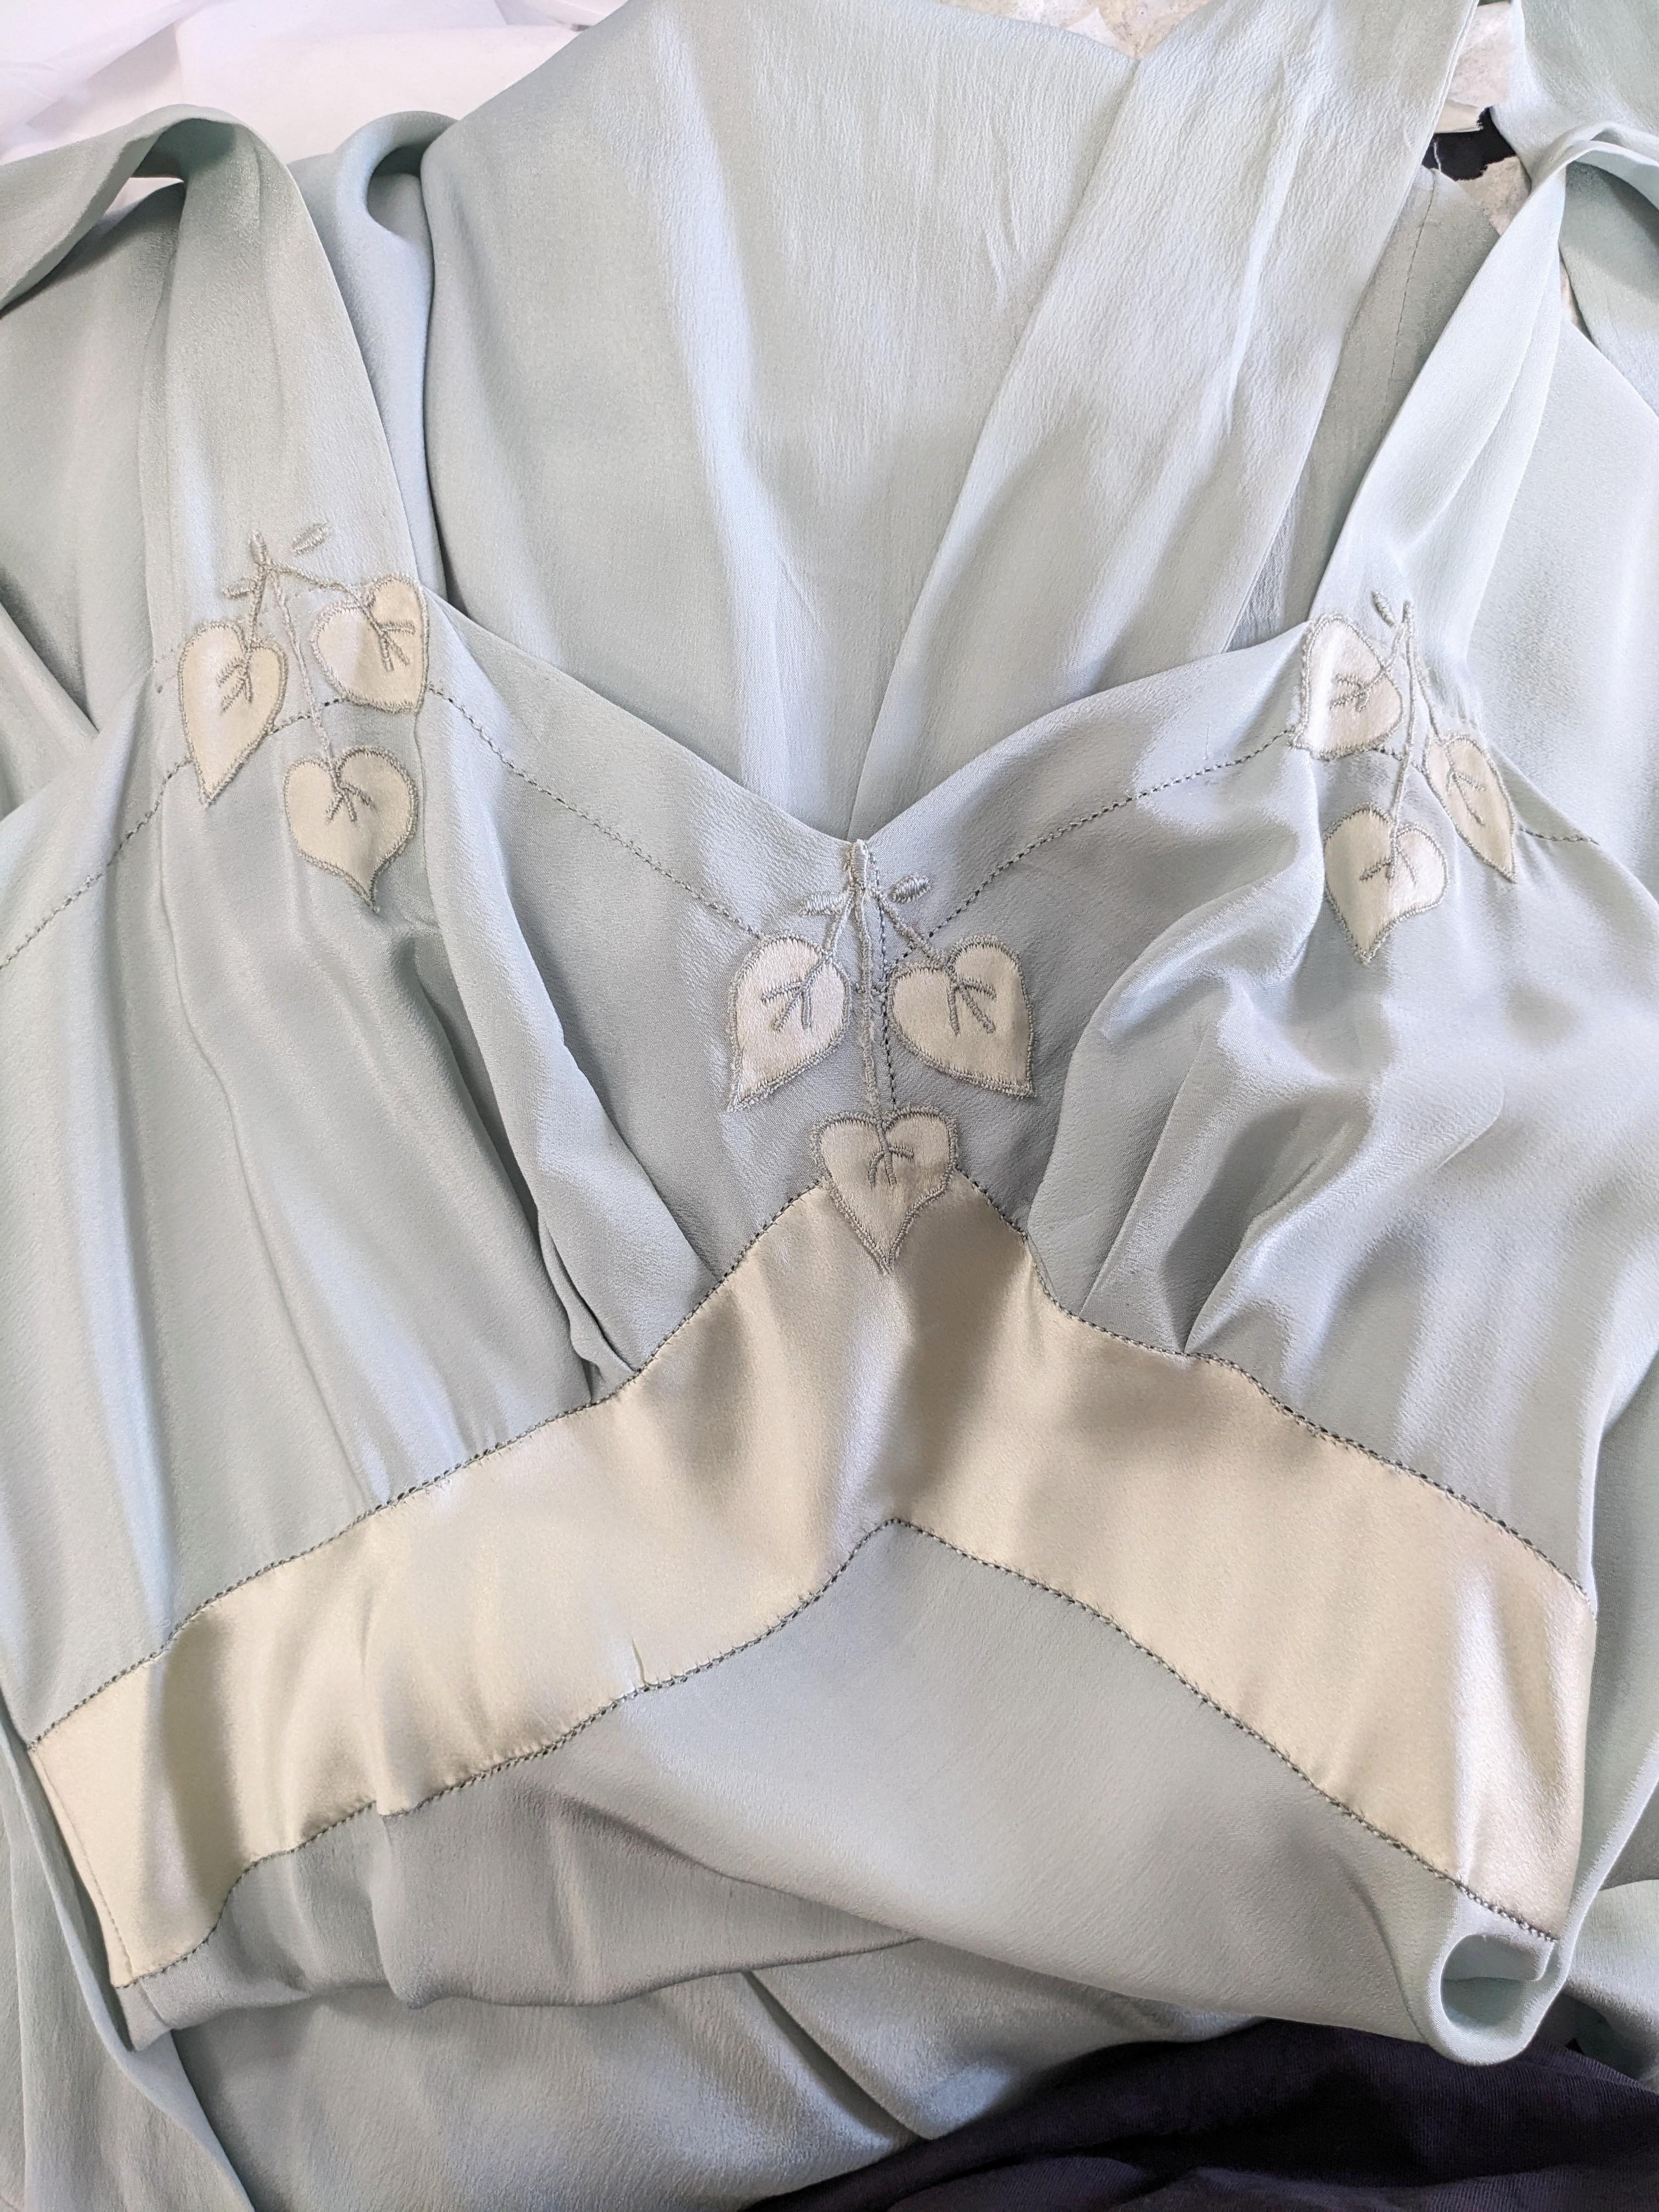 Sehr ungewöhnliches langes französisches Kleid aus Seidenkrepp und Seidensatin aus den 1930er Jahren in blassem Schieferblau. Seidensatin-Philodendronblatt-Applikation auf dem Mieder und Satin-Tailleneinsatz mit langen Satin-Selbstbindern an den